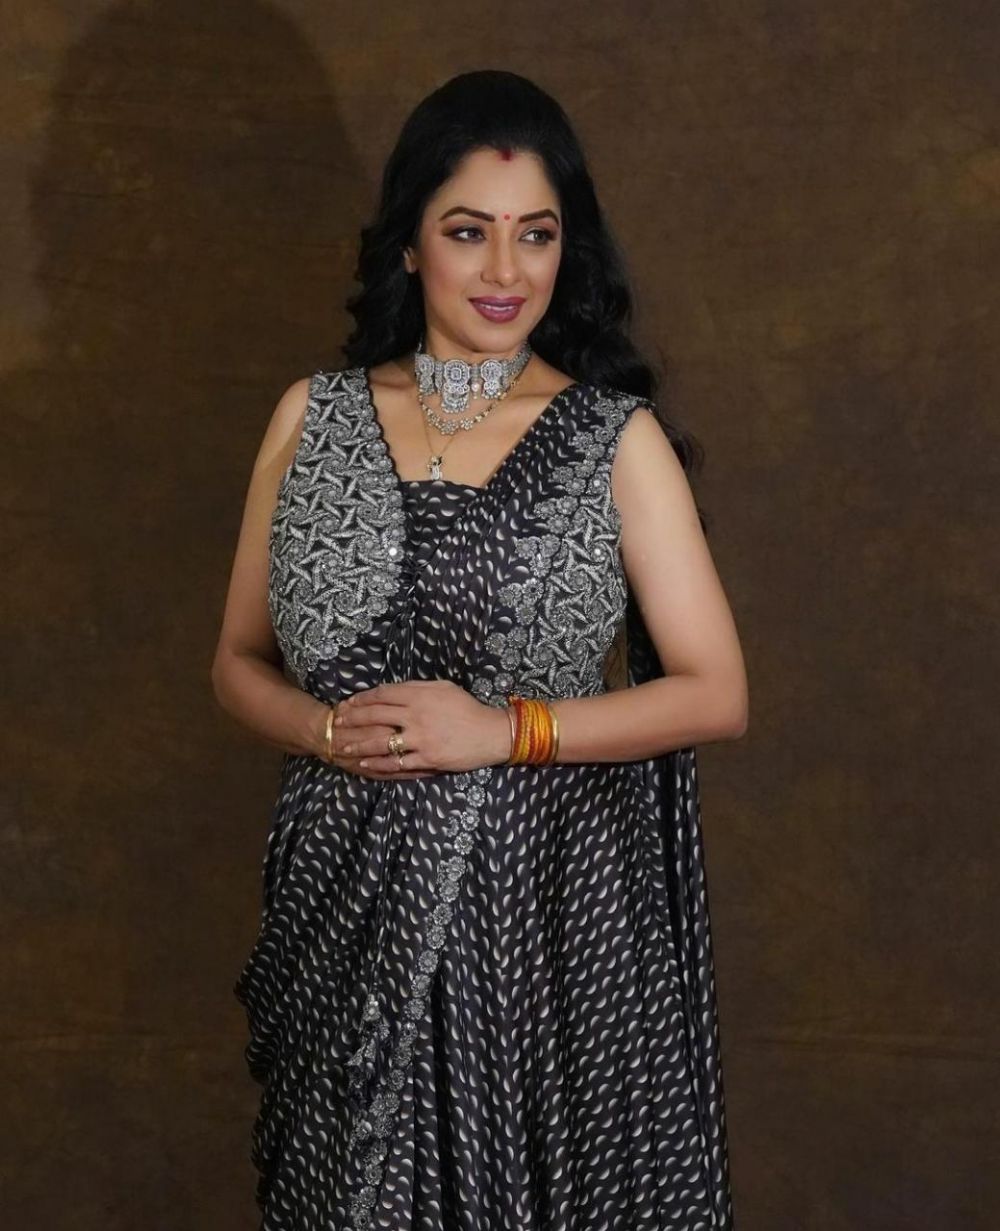 Pemeran Anupamaa kerap tampil lusuh di serial, ini 11 potretnya saat tampil glamor di pemotretan